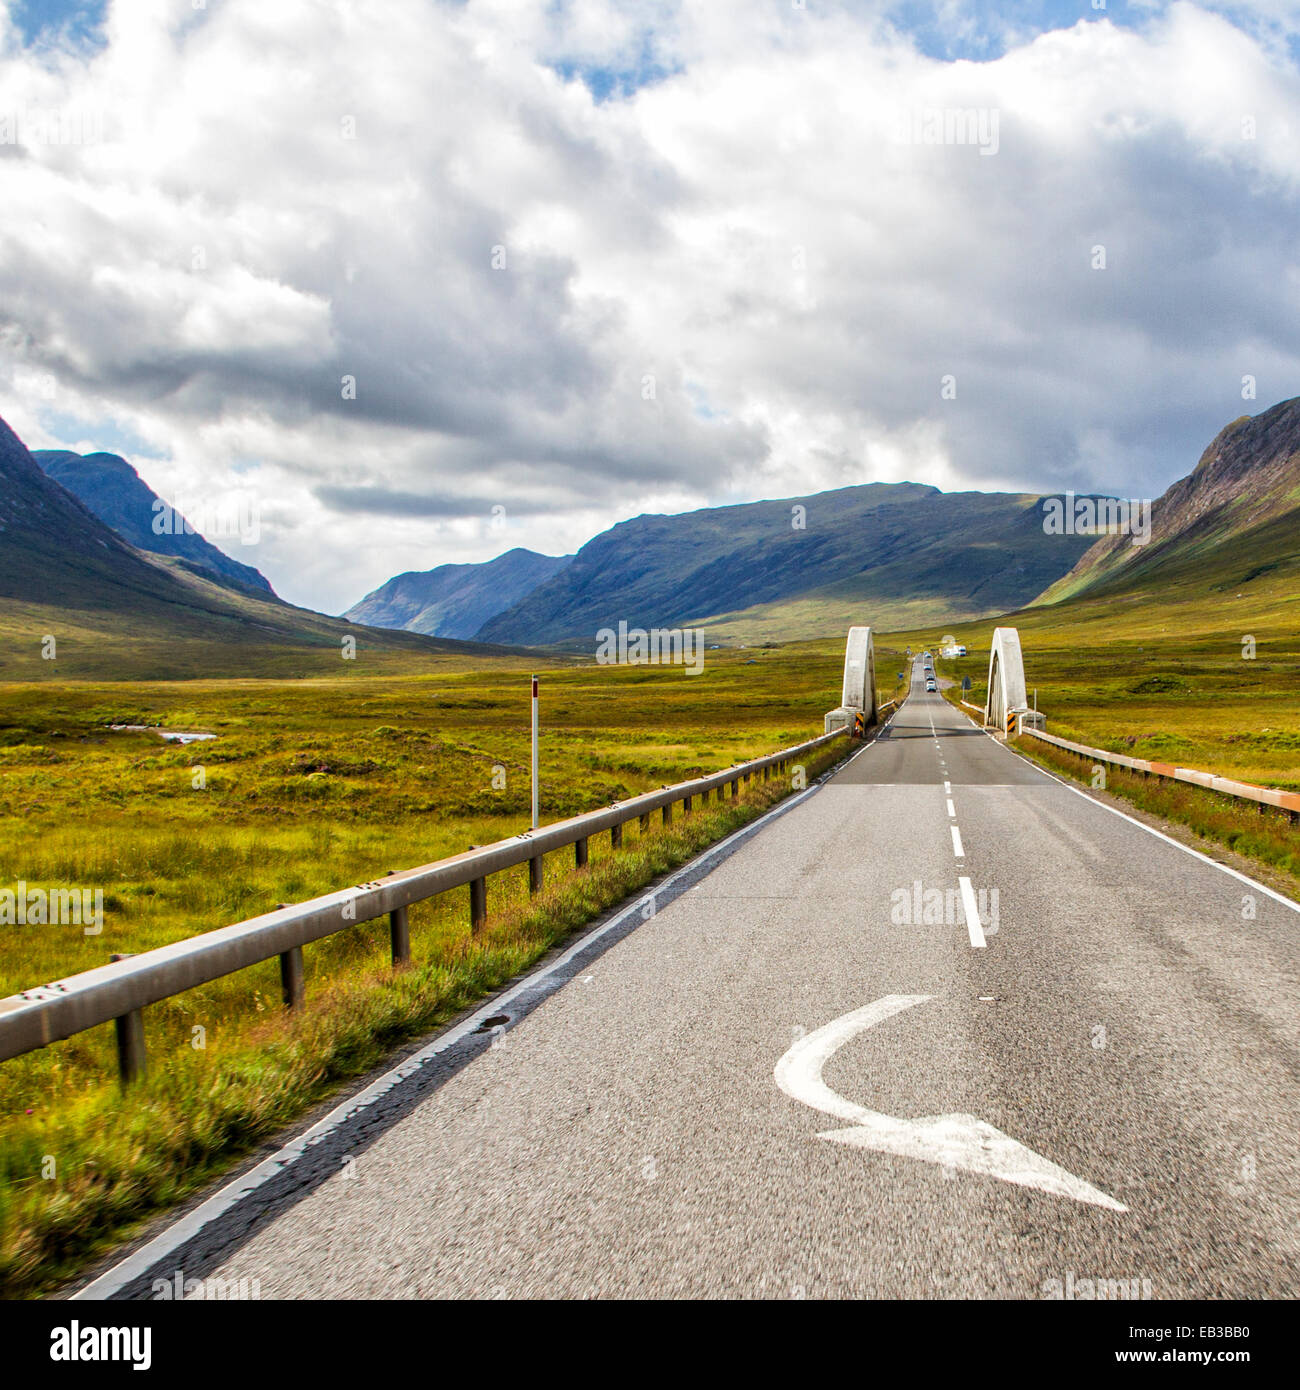 UK, Scotland, Road among plain leading towards mountains Stock Photo